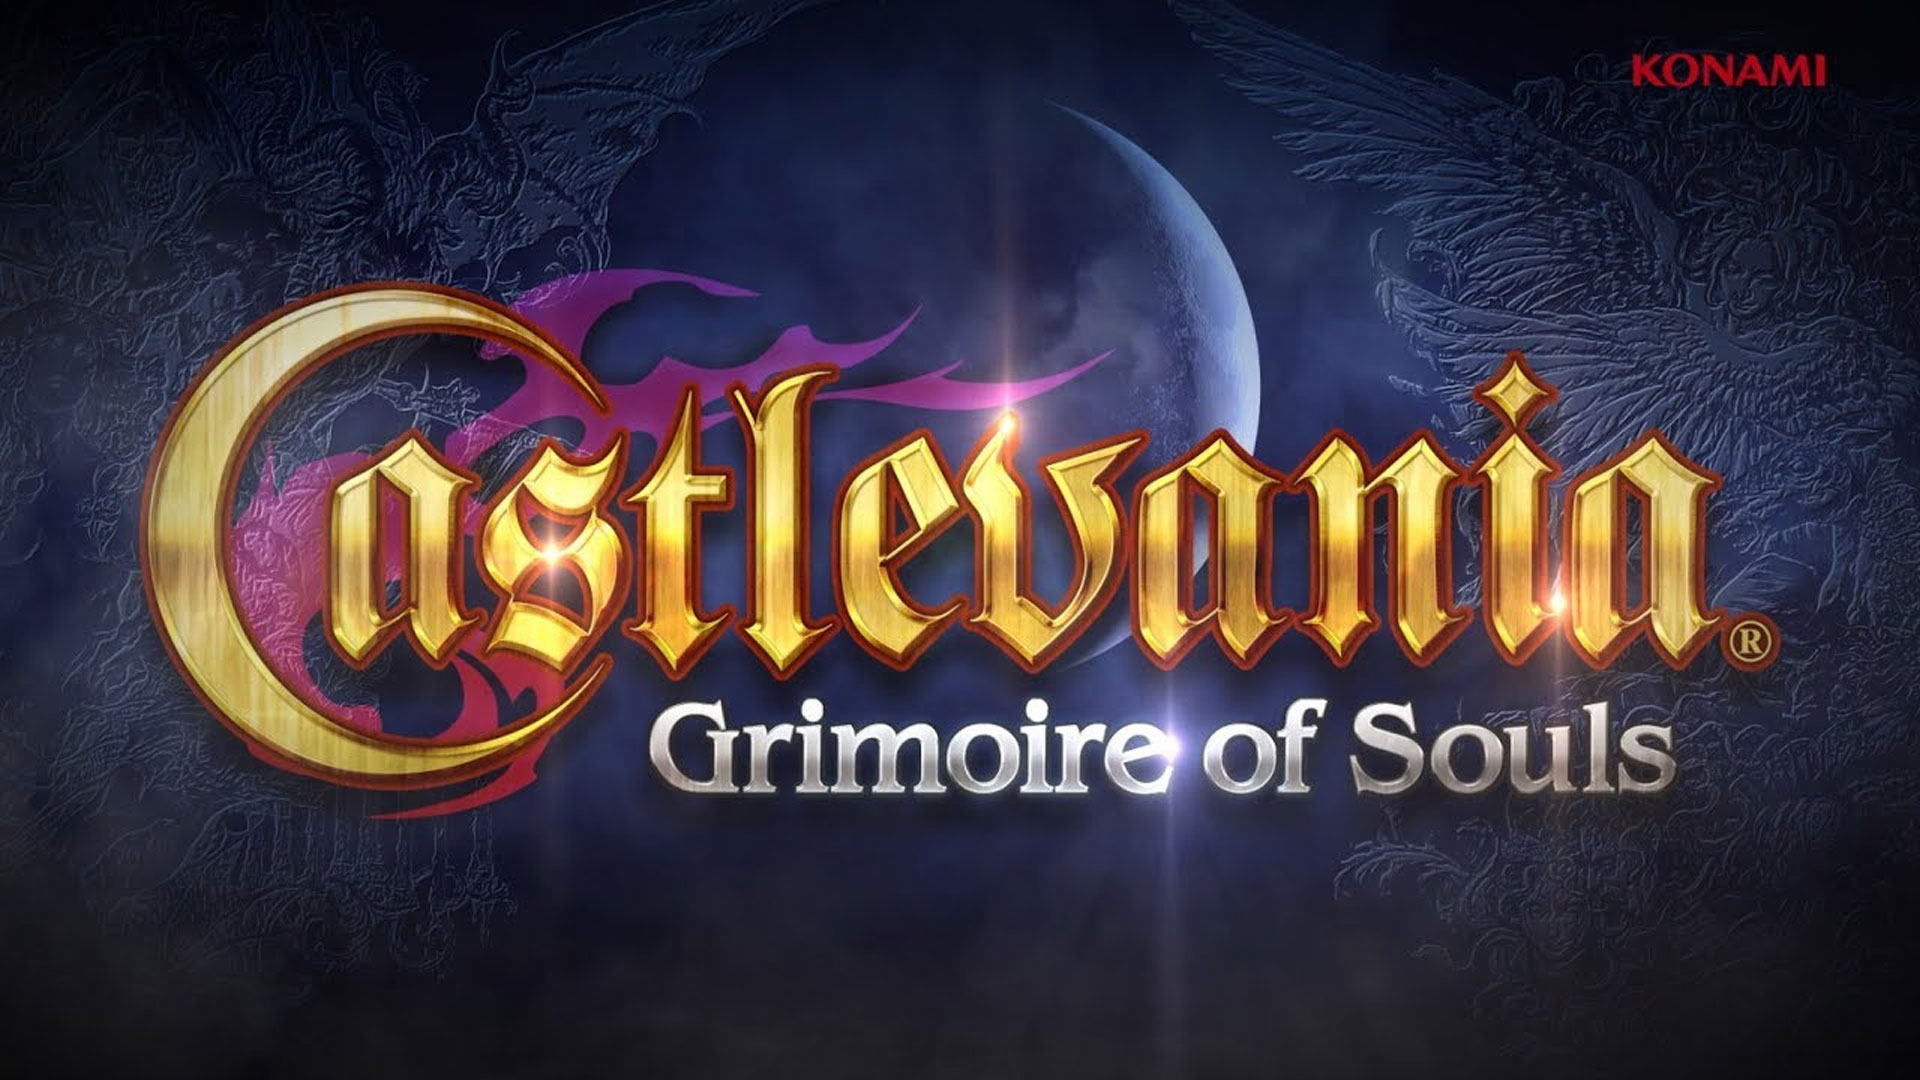 بازی موبایل Castlevania: Grimoire Of Souls در راه اپل آرکید